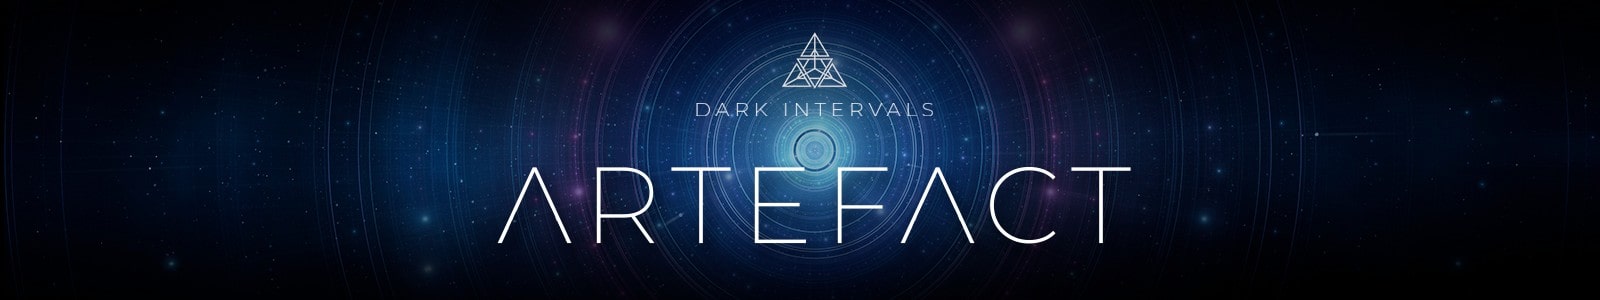 Dark Intervals ARTEFACT